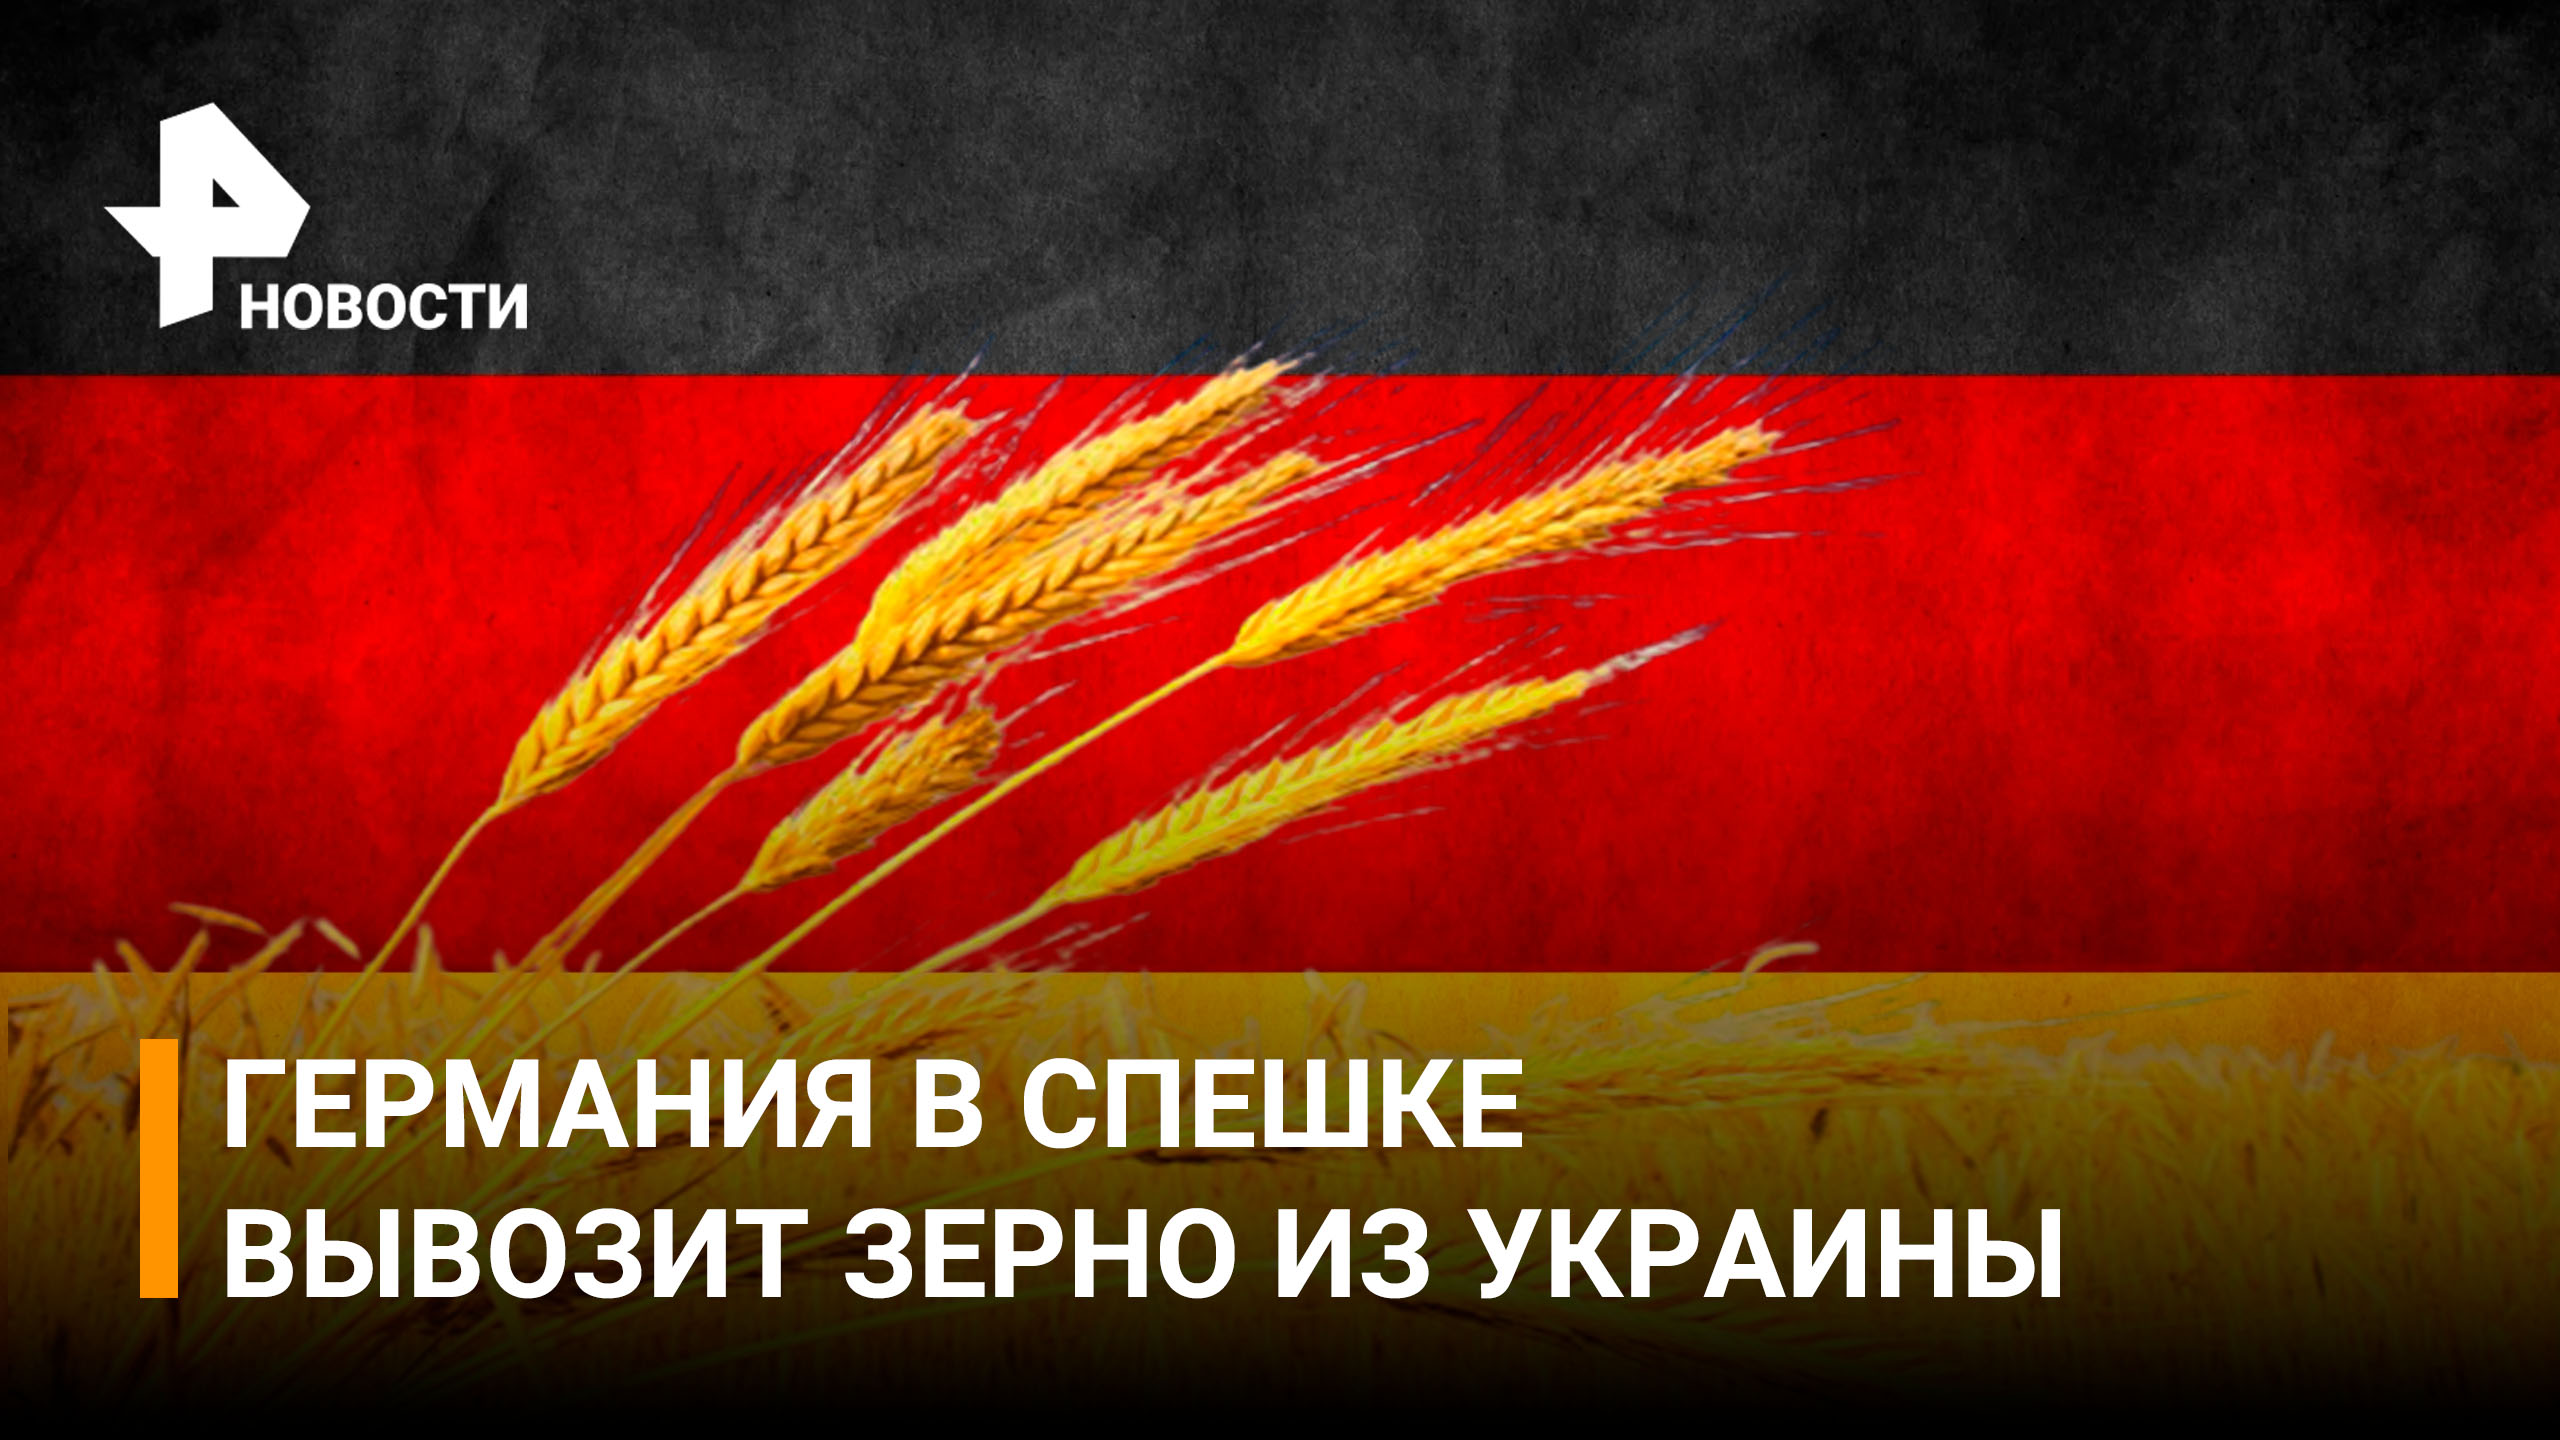 Злачное время: Германия наращивает темпы вывоза зерна из Украины / РЕН новости